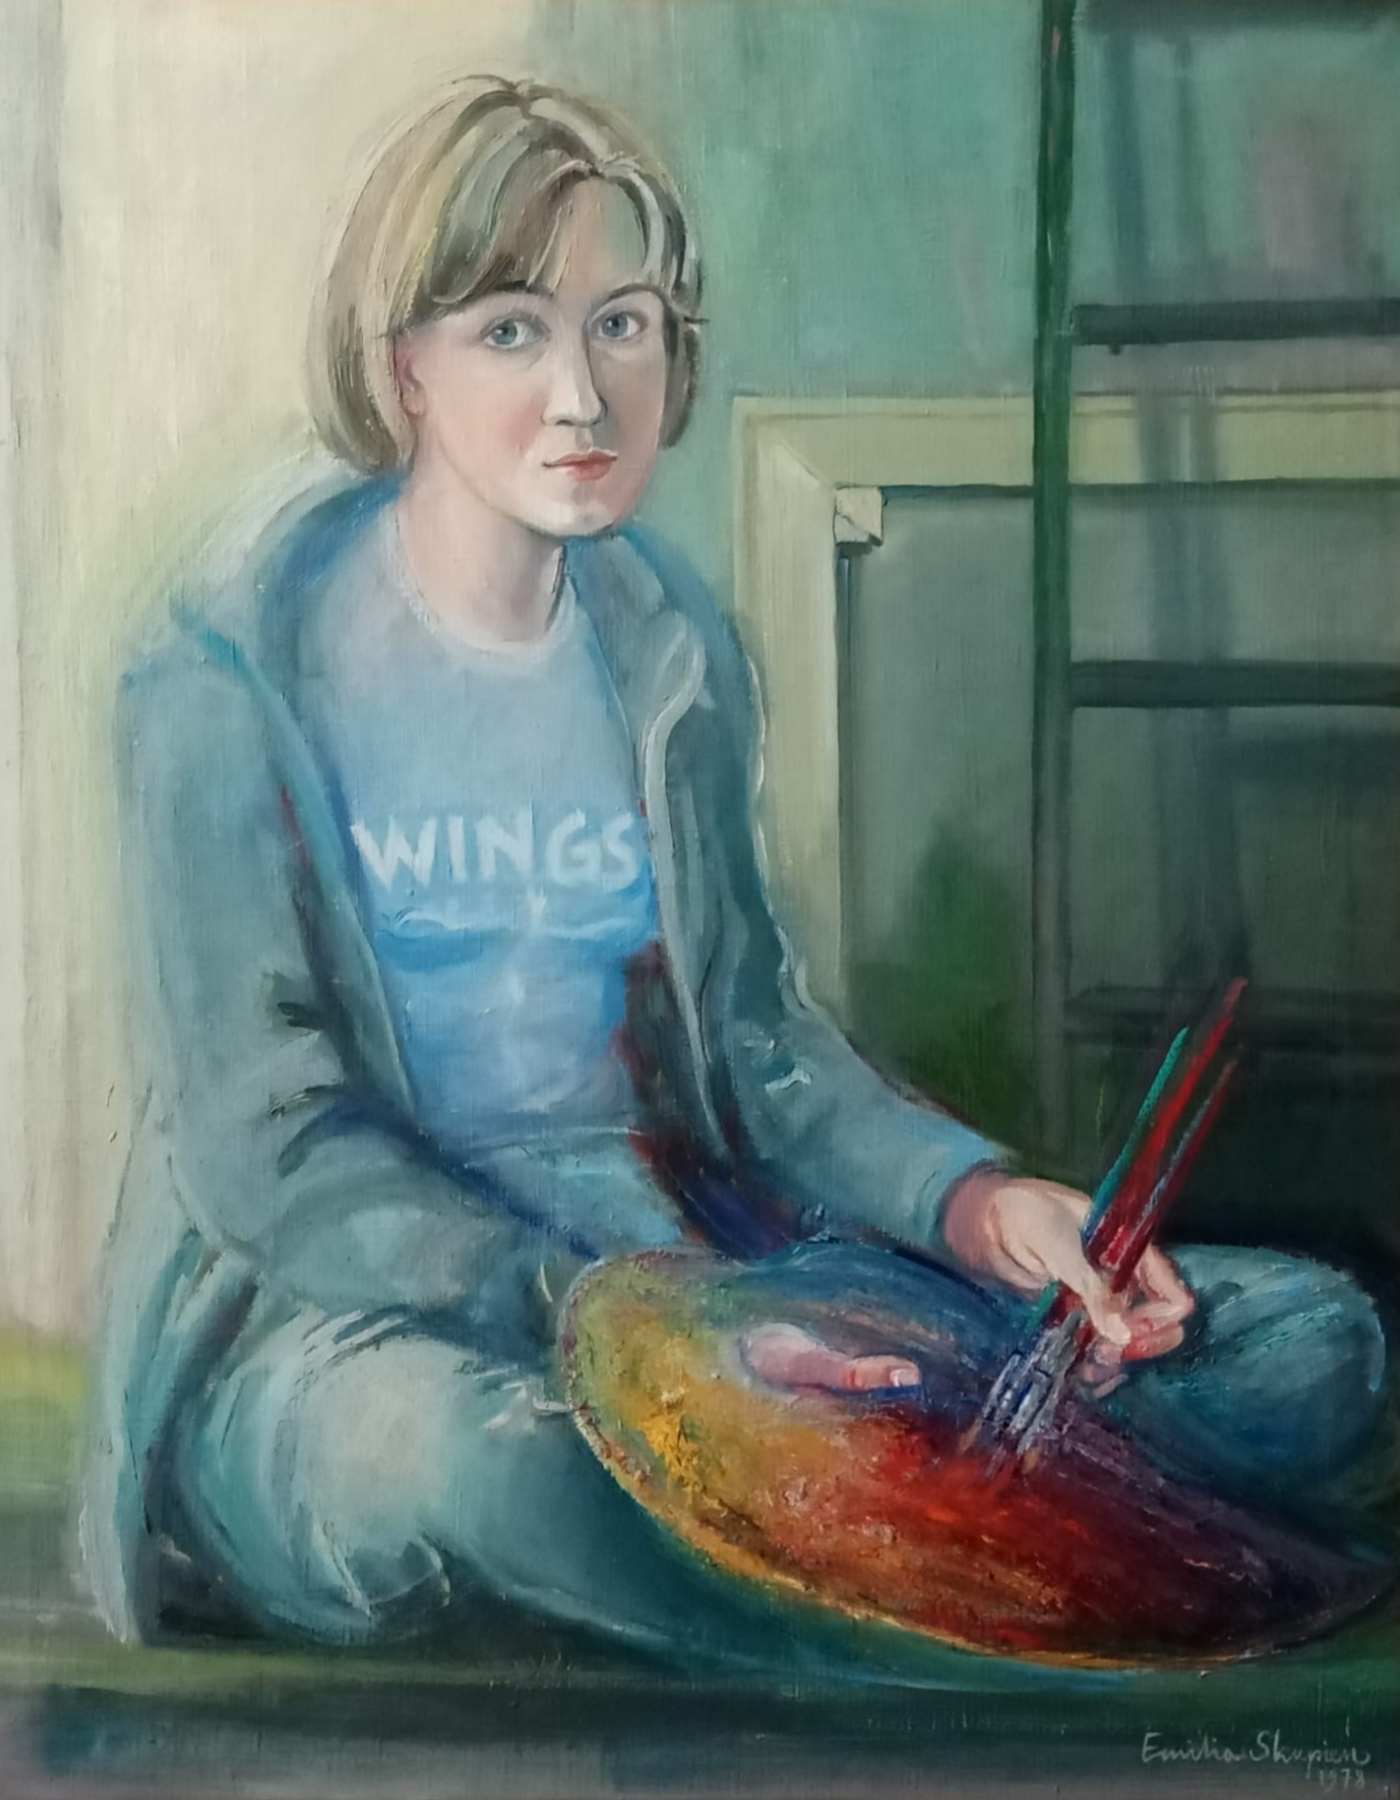  Emilia Skupień, autoportret Na zdjęciu autoportret Emilii Skupień